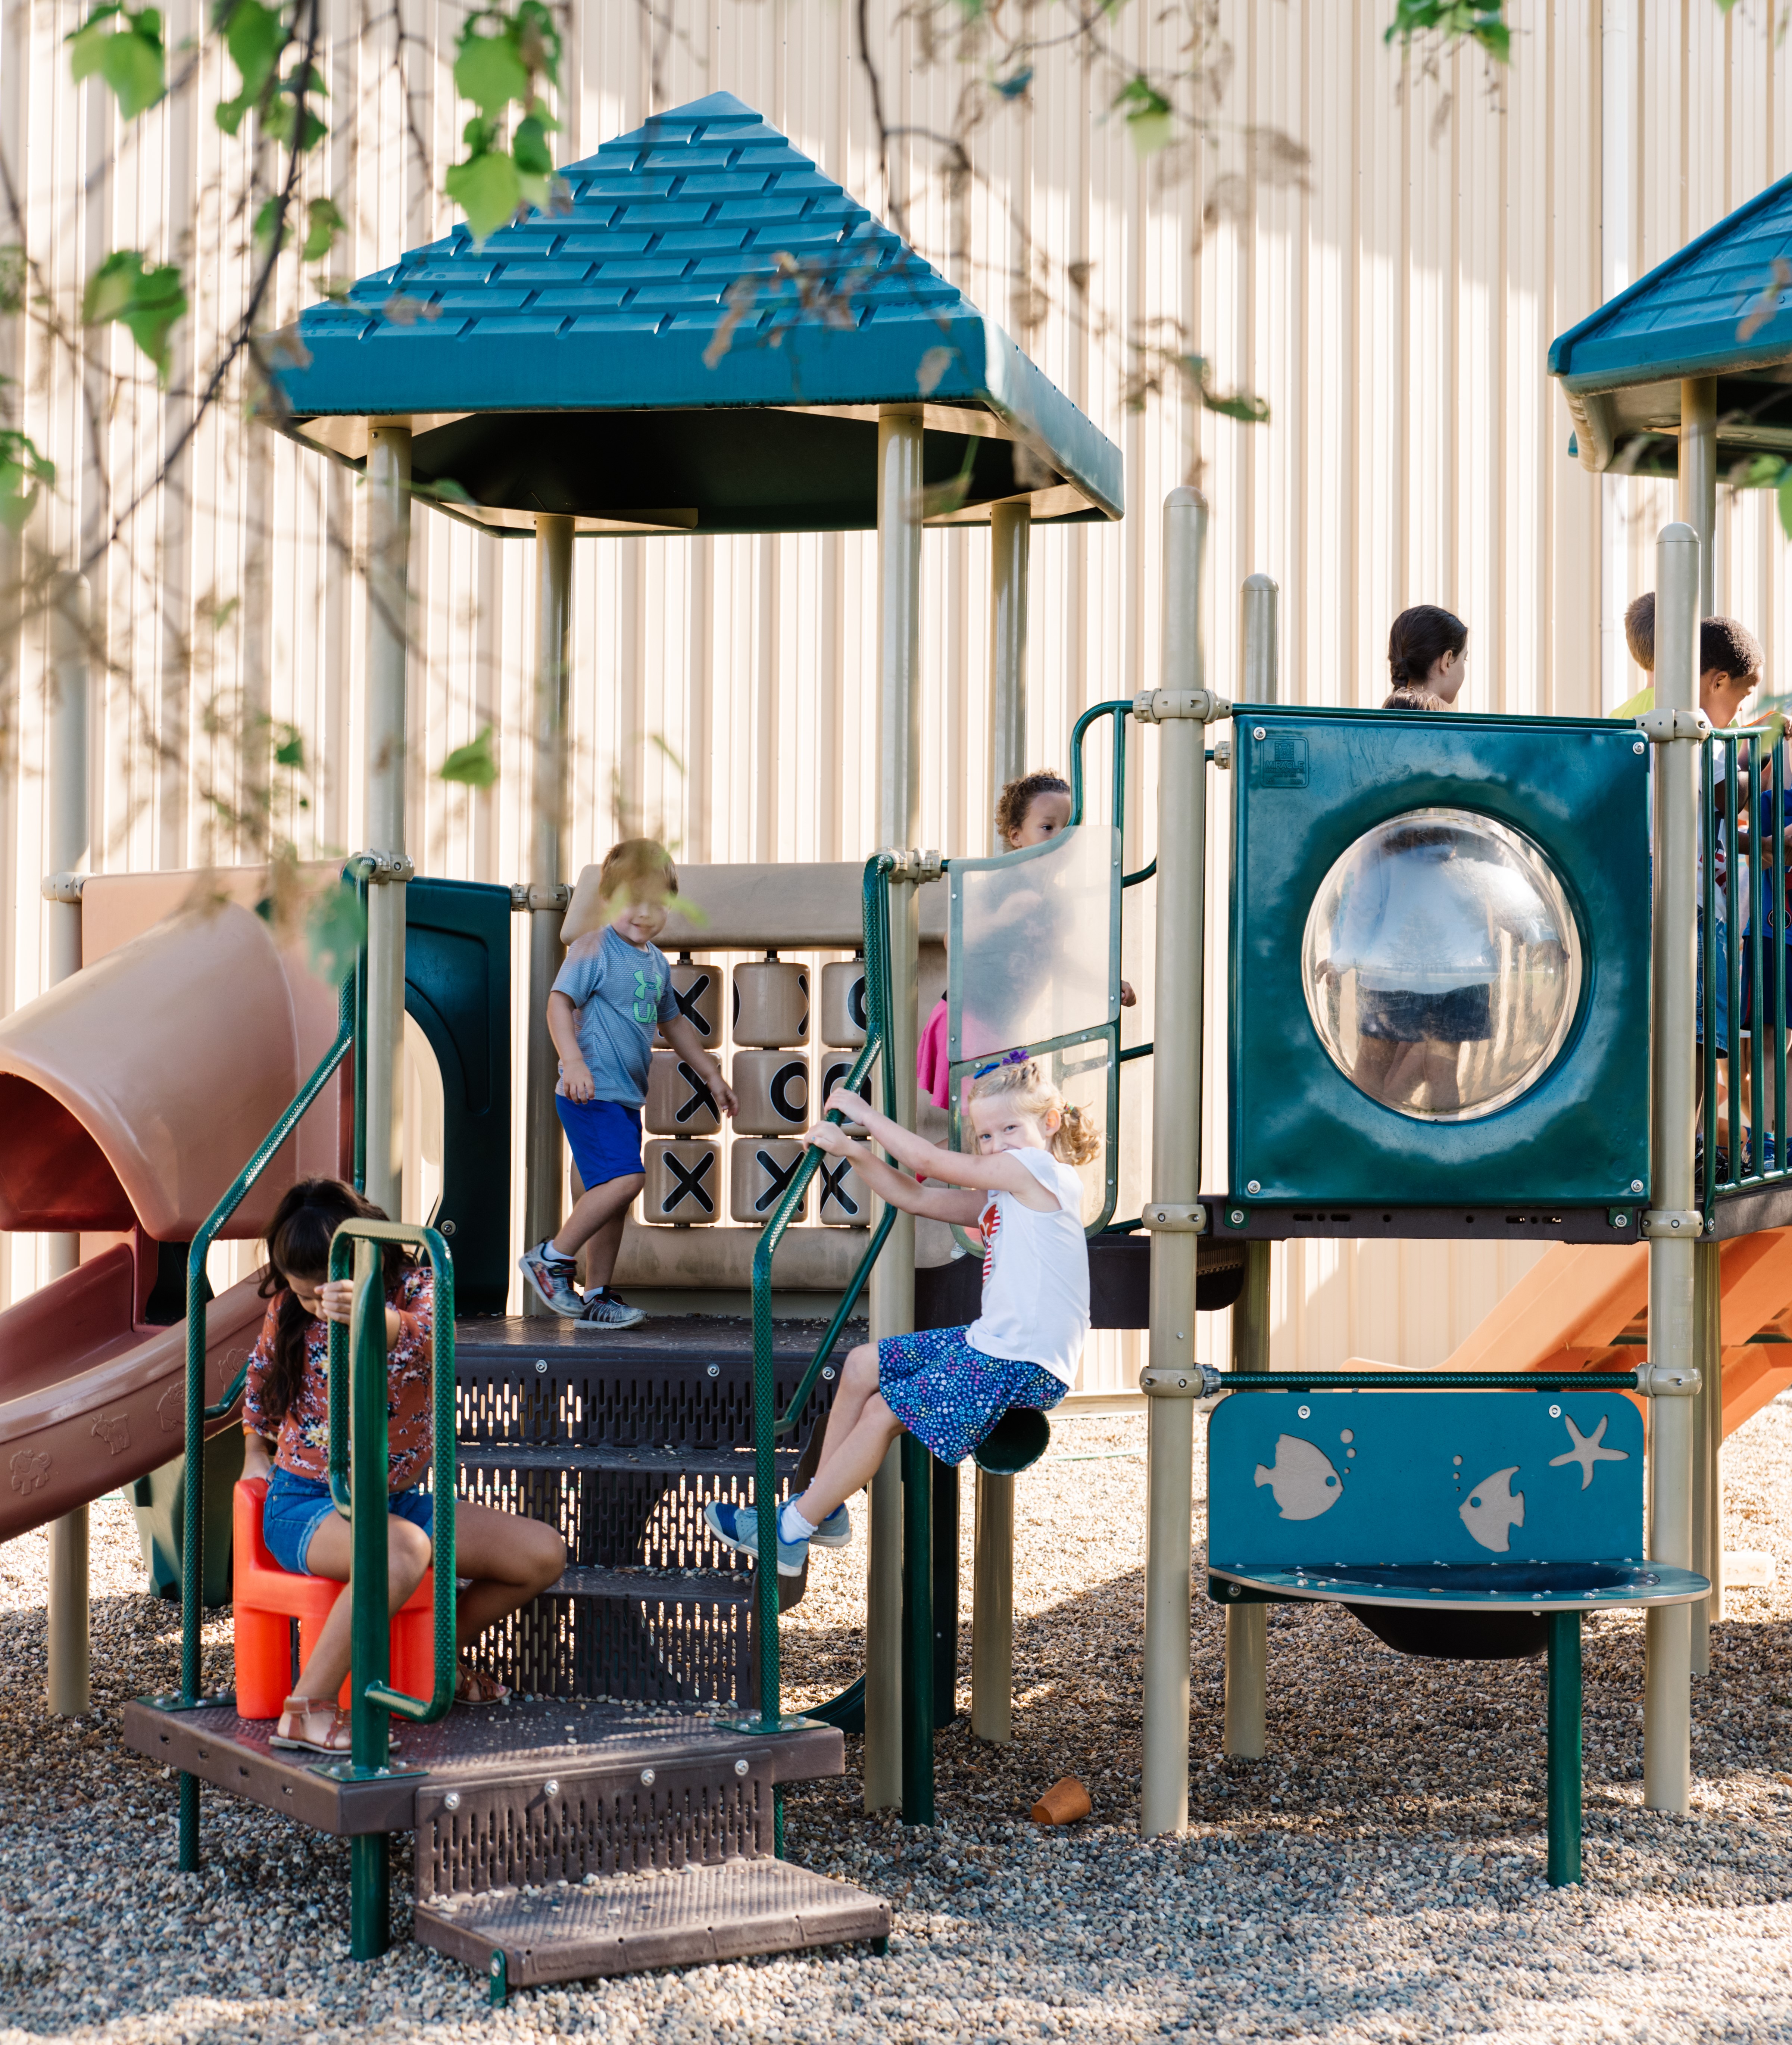 Children play on a playground. 